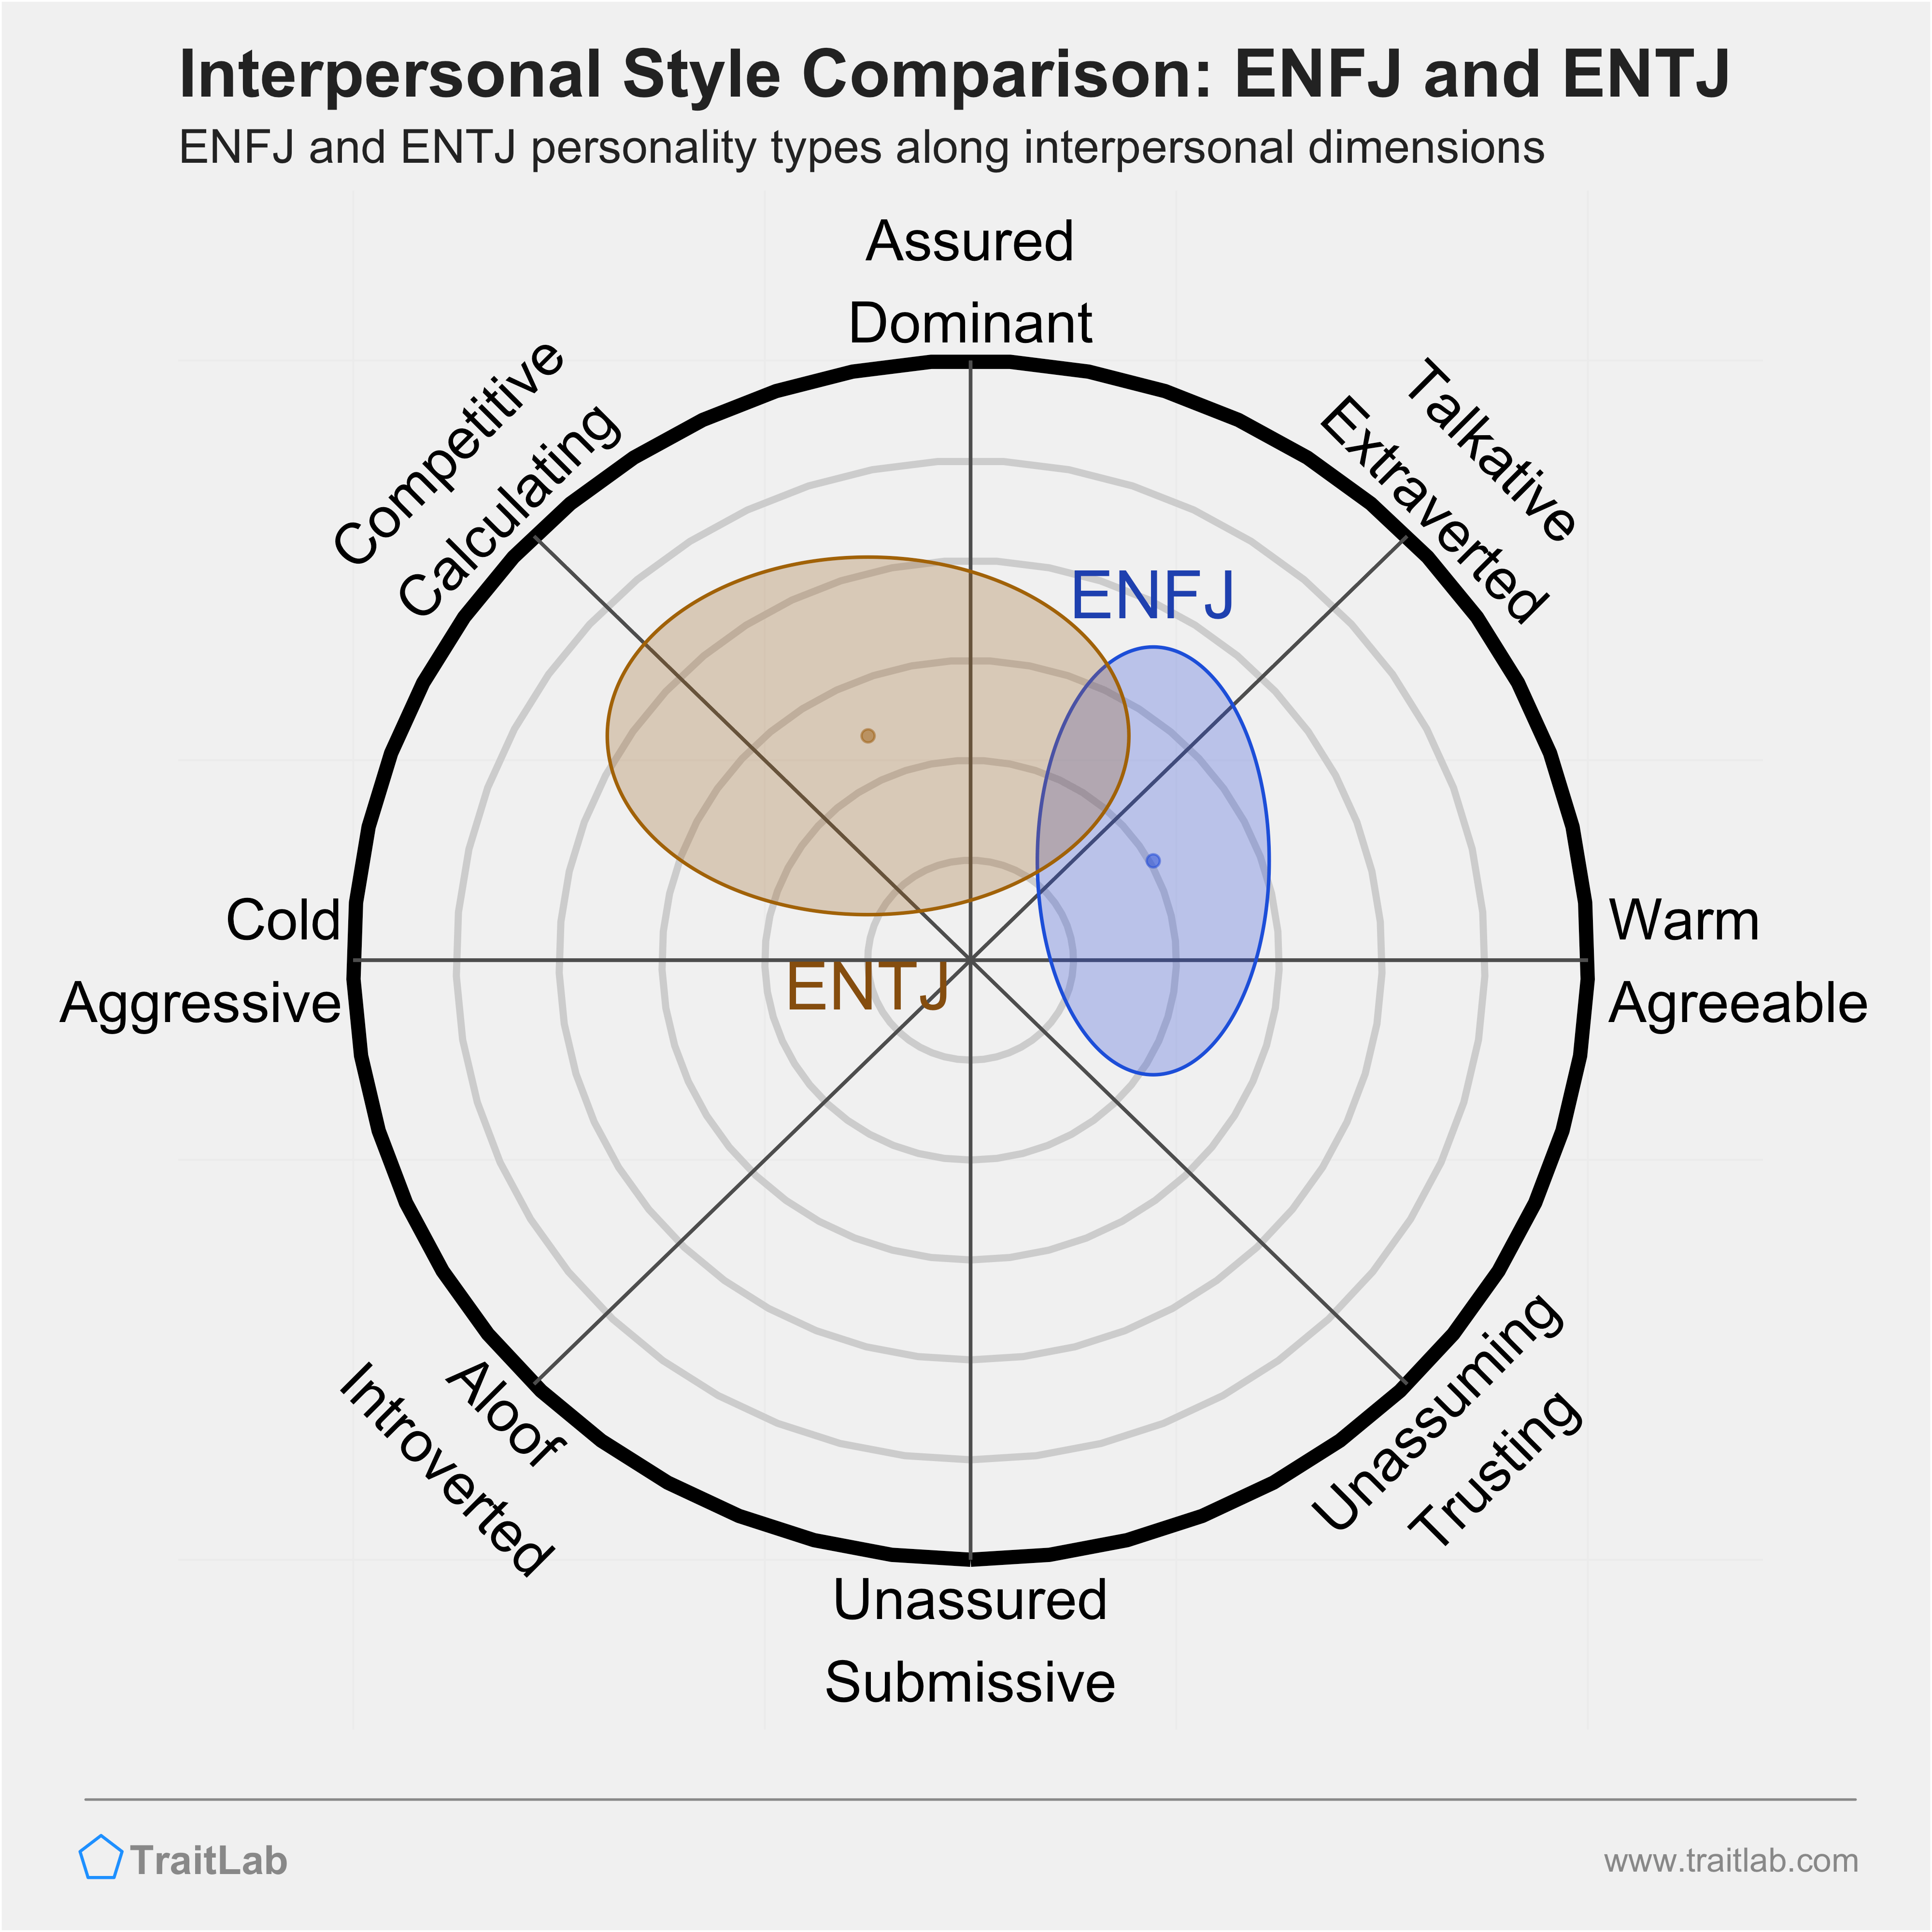 ENFJ and ENTJ comparison across interpersonal dimensions